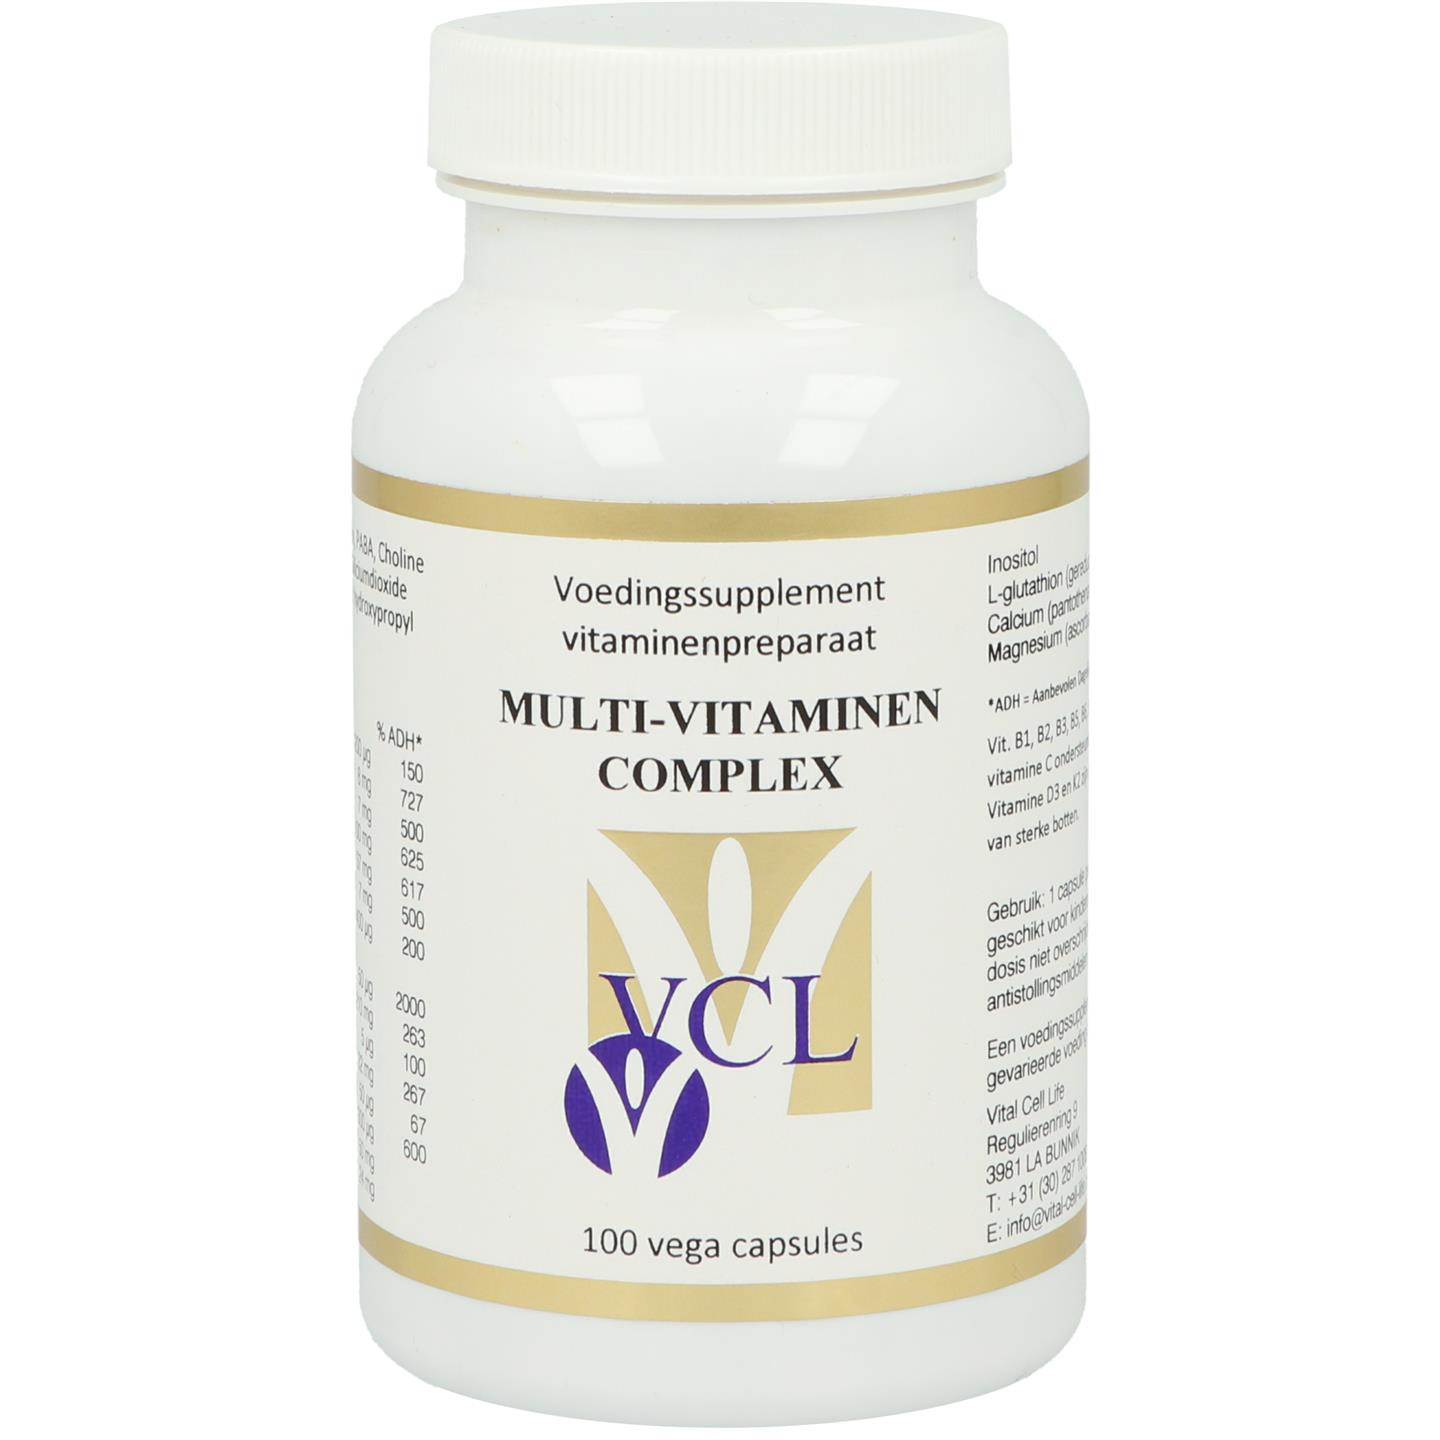 Multi-Vitaminen complex